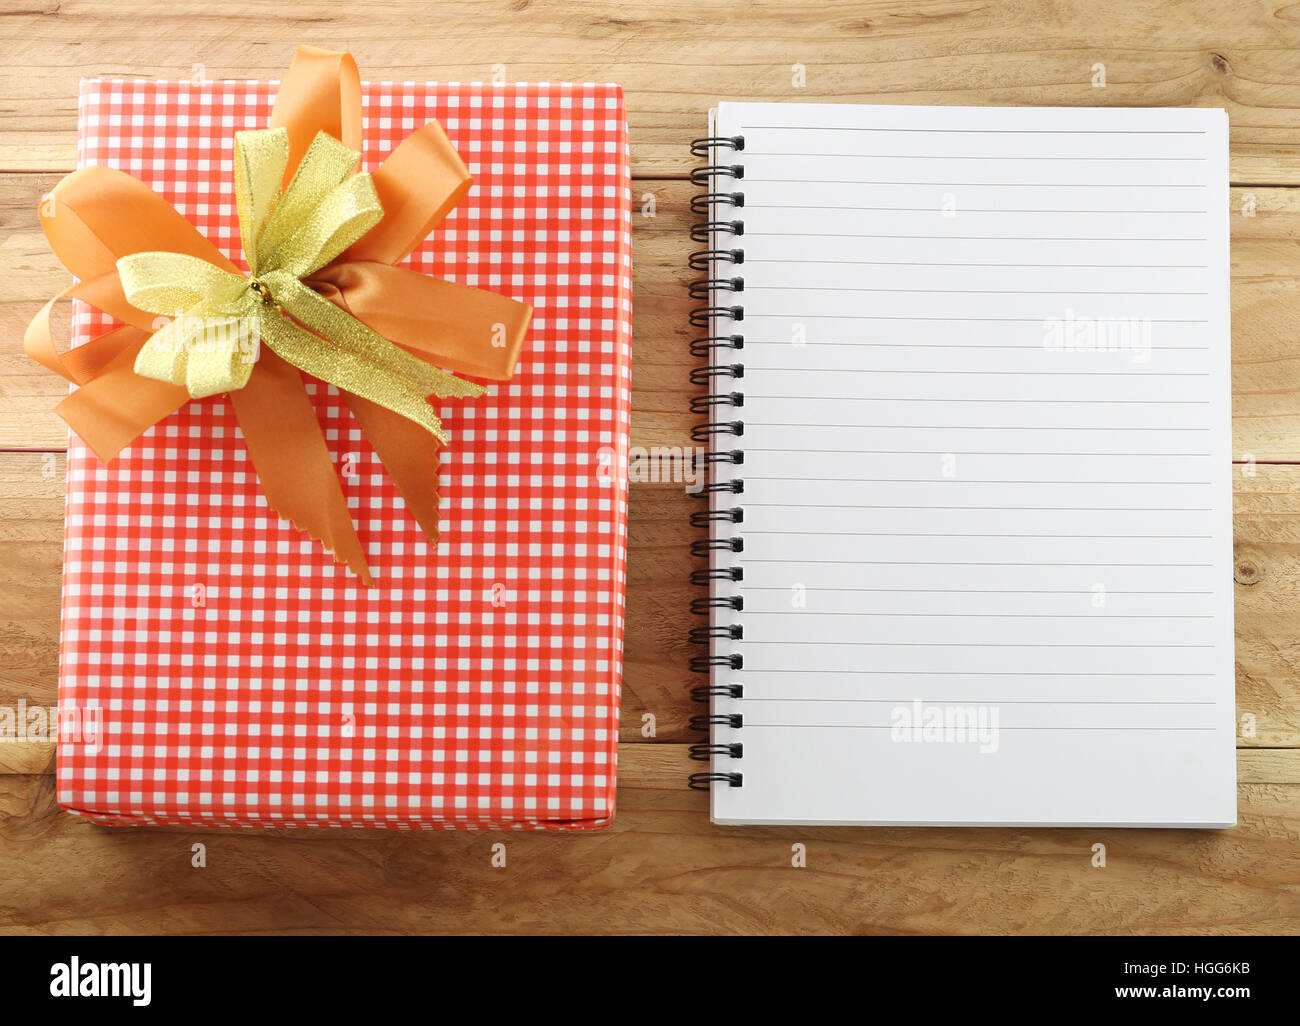 Caja de regalo roja con vacío libro blanco sobre fondo de madera,concepto de Navidad y día importante. Foto de stock